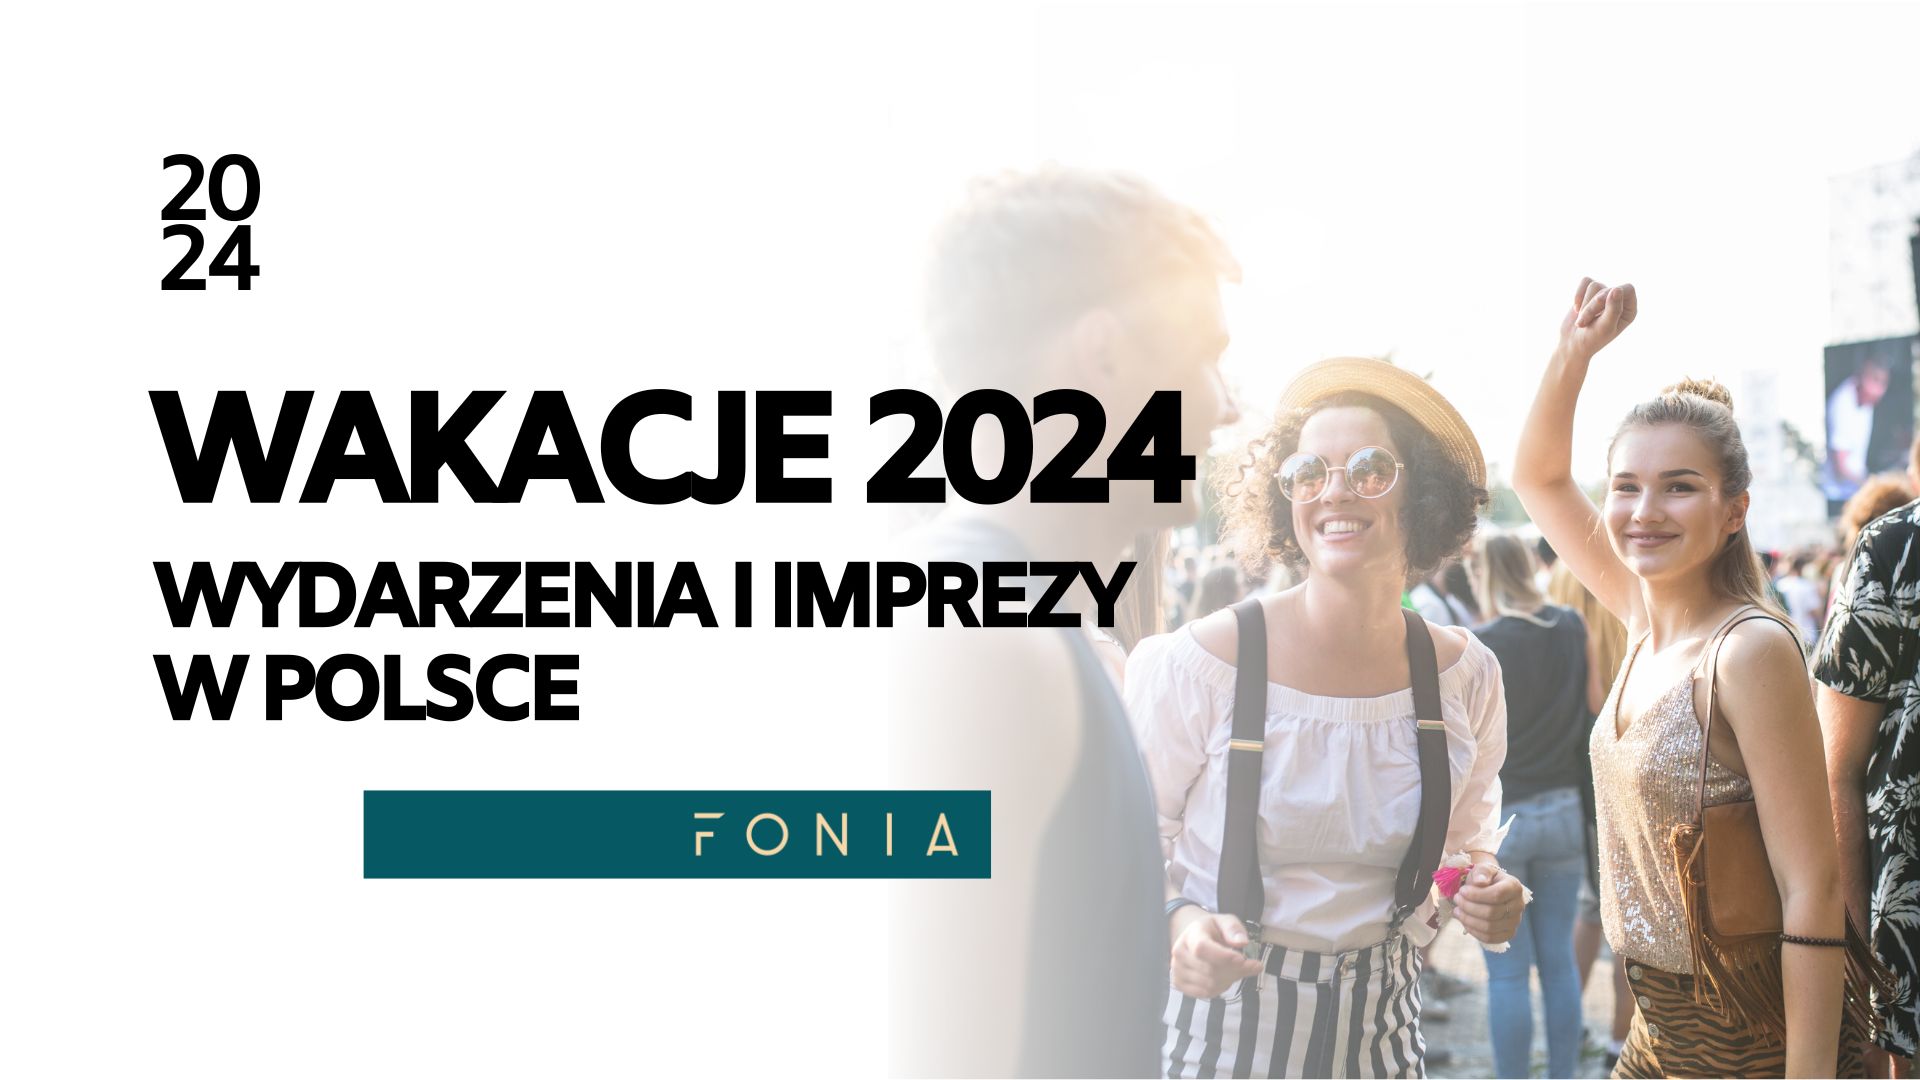 Wakacje 2024 - wydarzenia i imprezy w Polsce